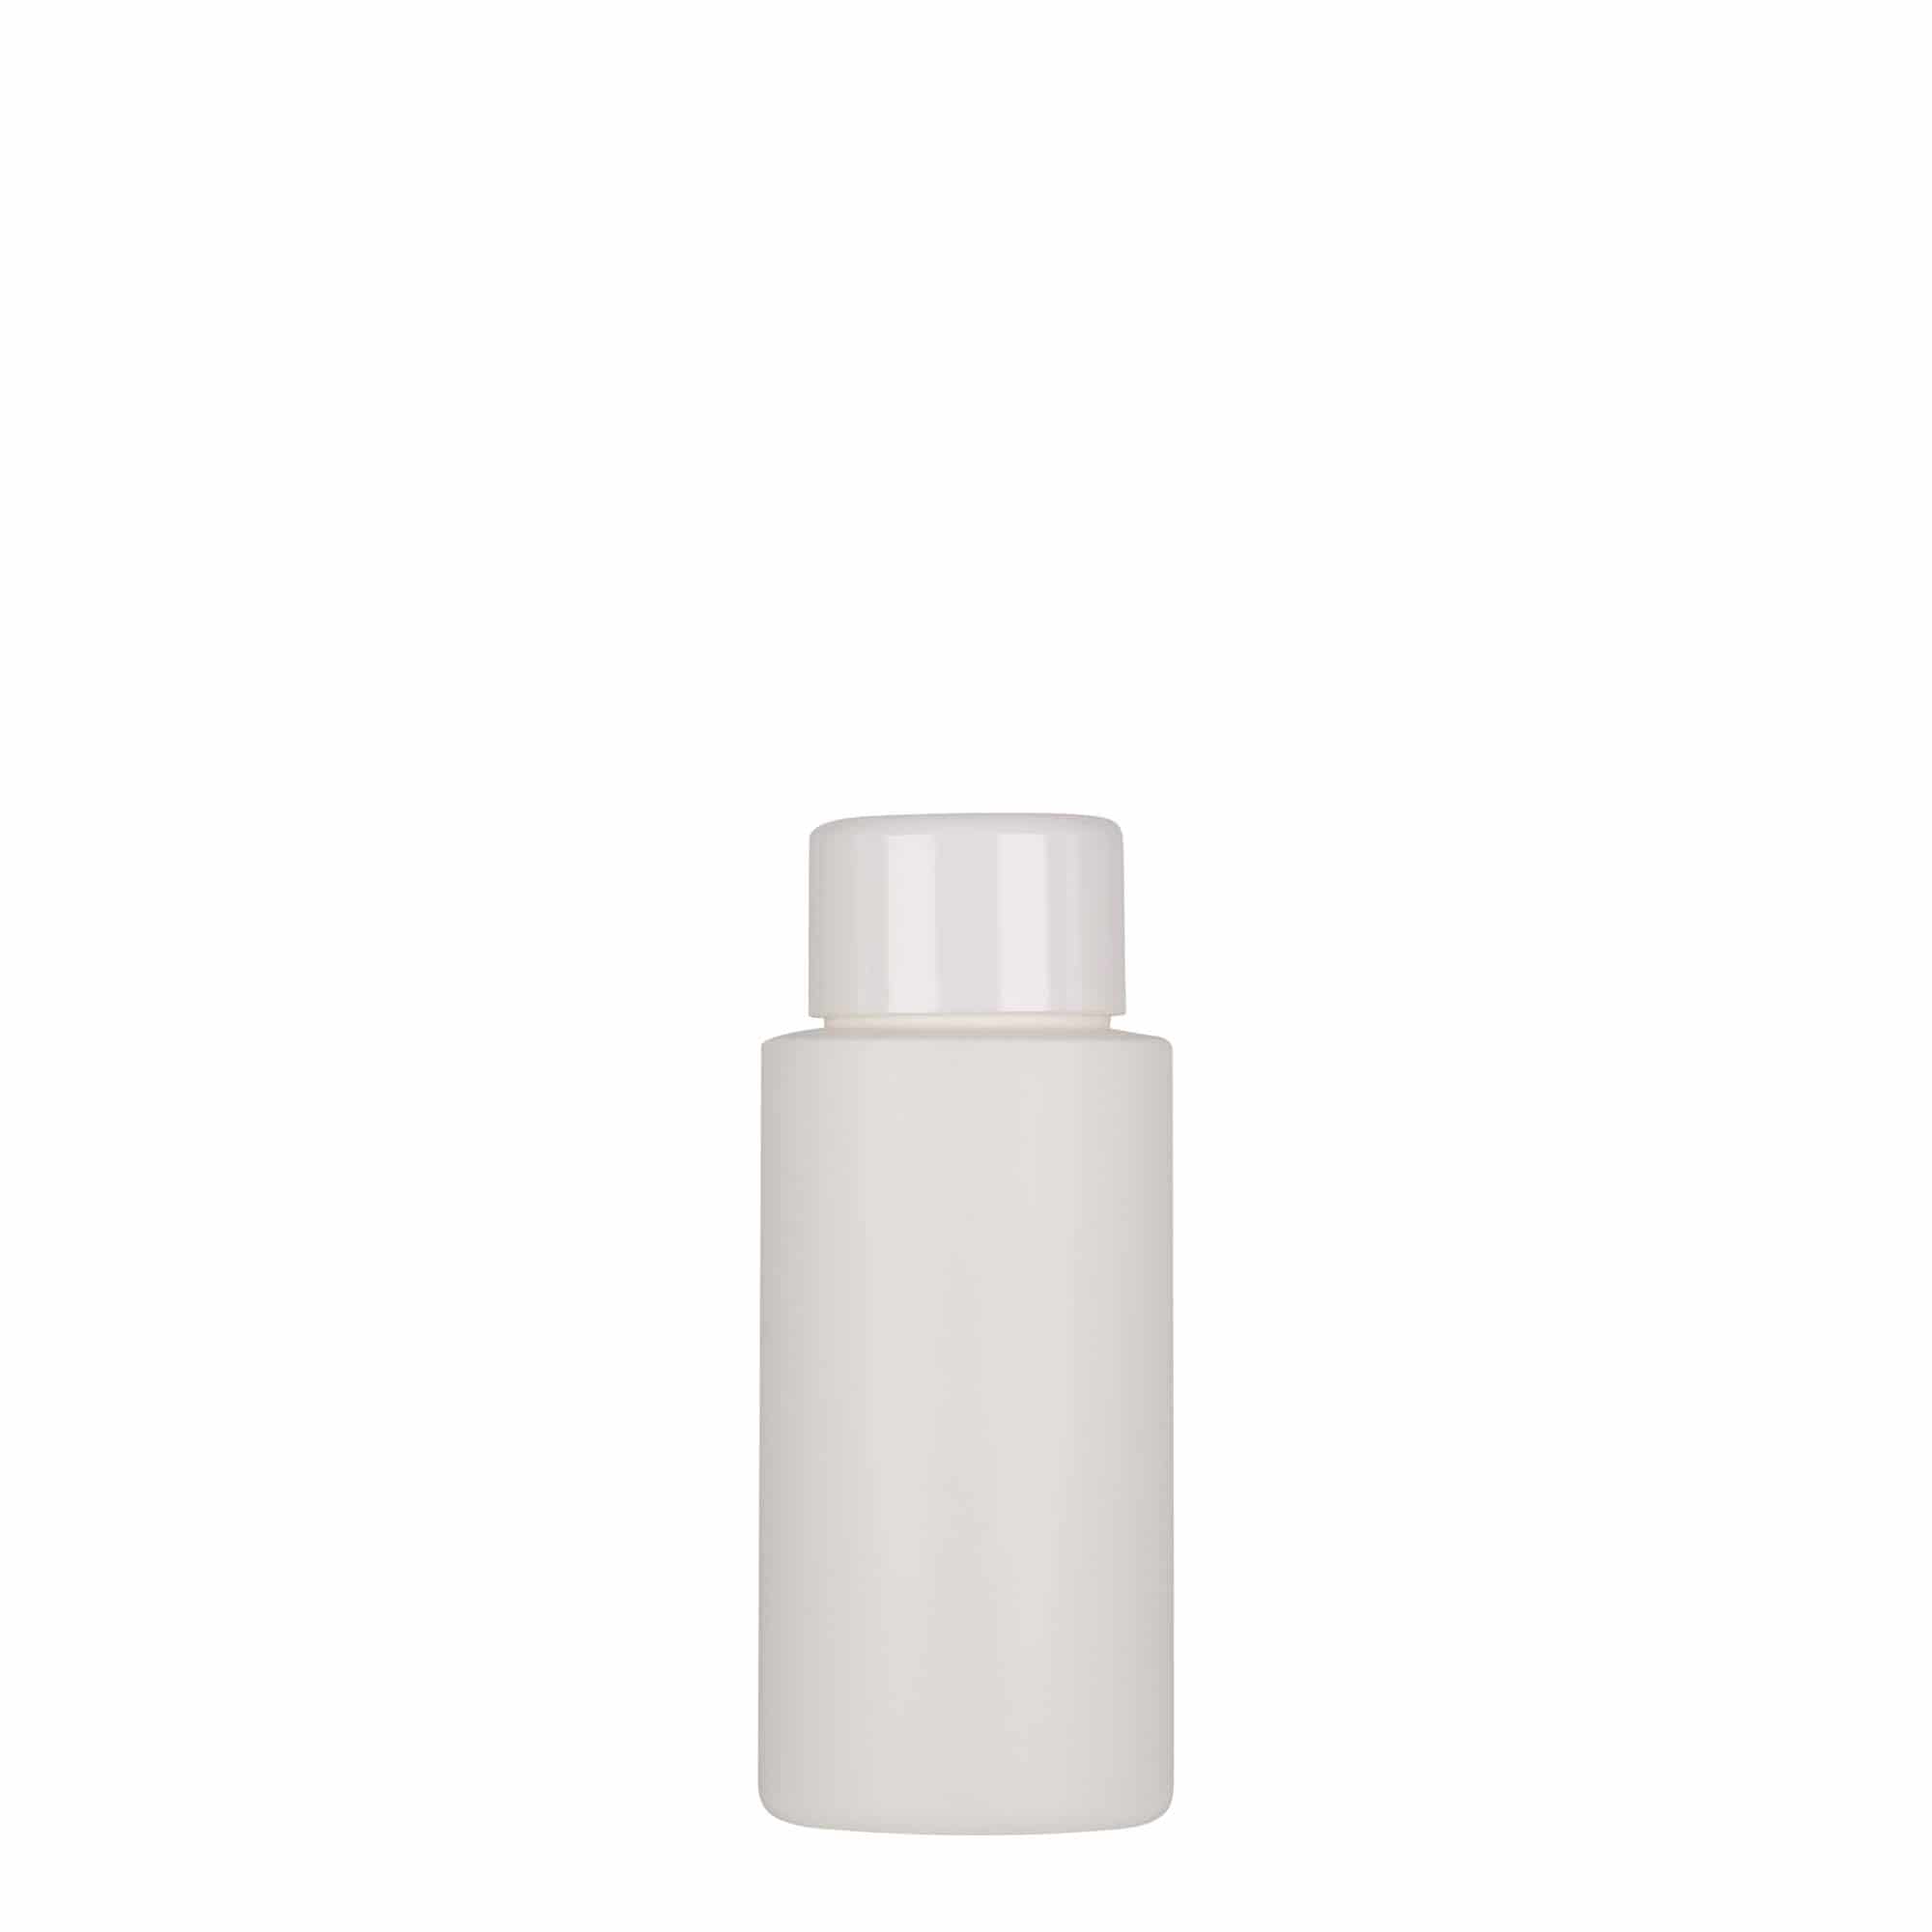 50 ml butelka z tworzywa sztucznego 'Pipe', HDPE, kolor biały, zamknięcie: GPI 24/410